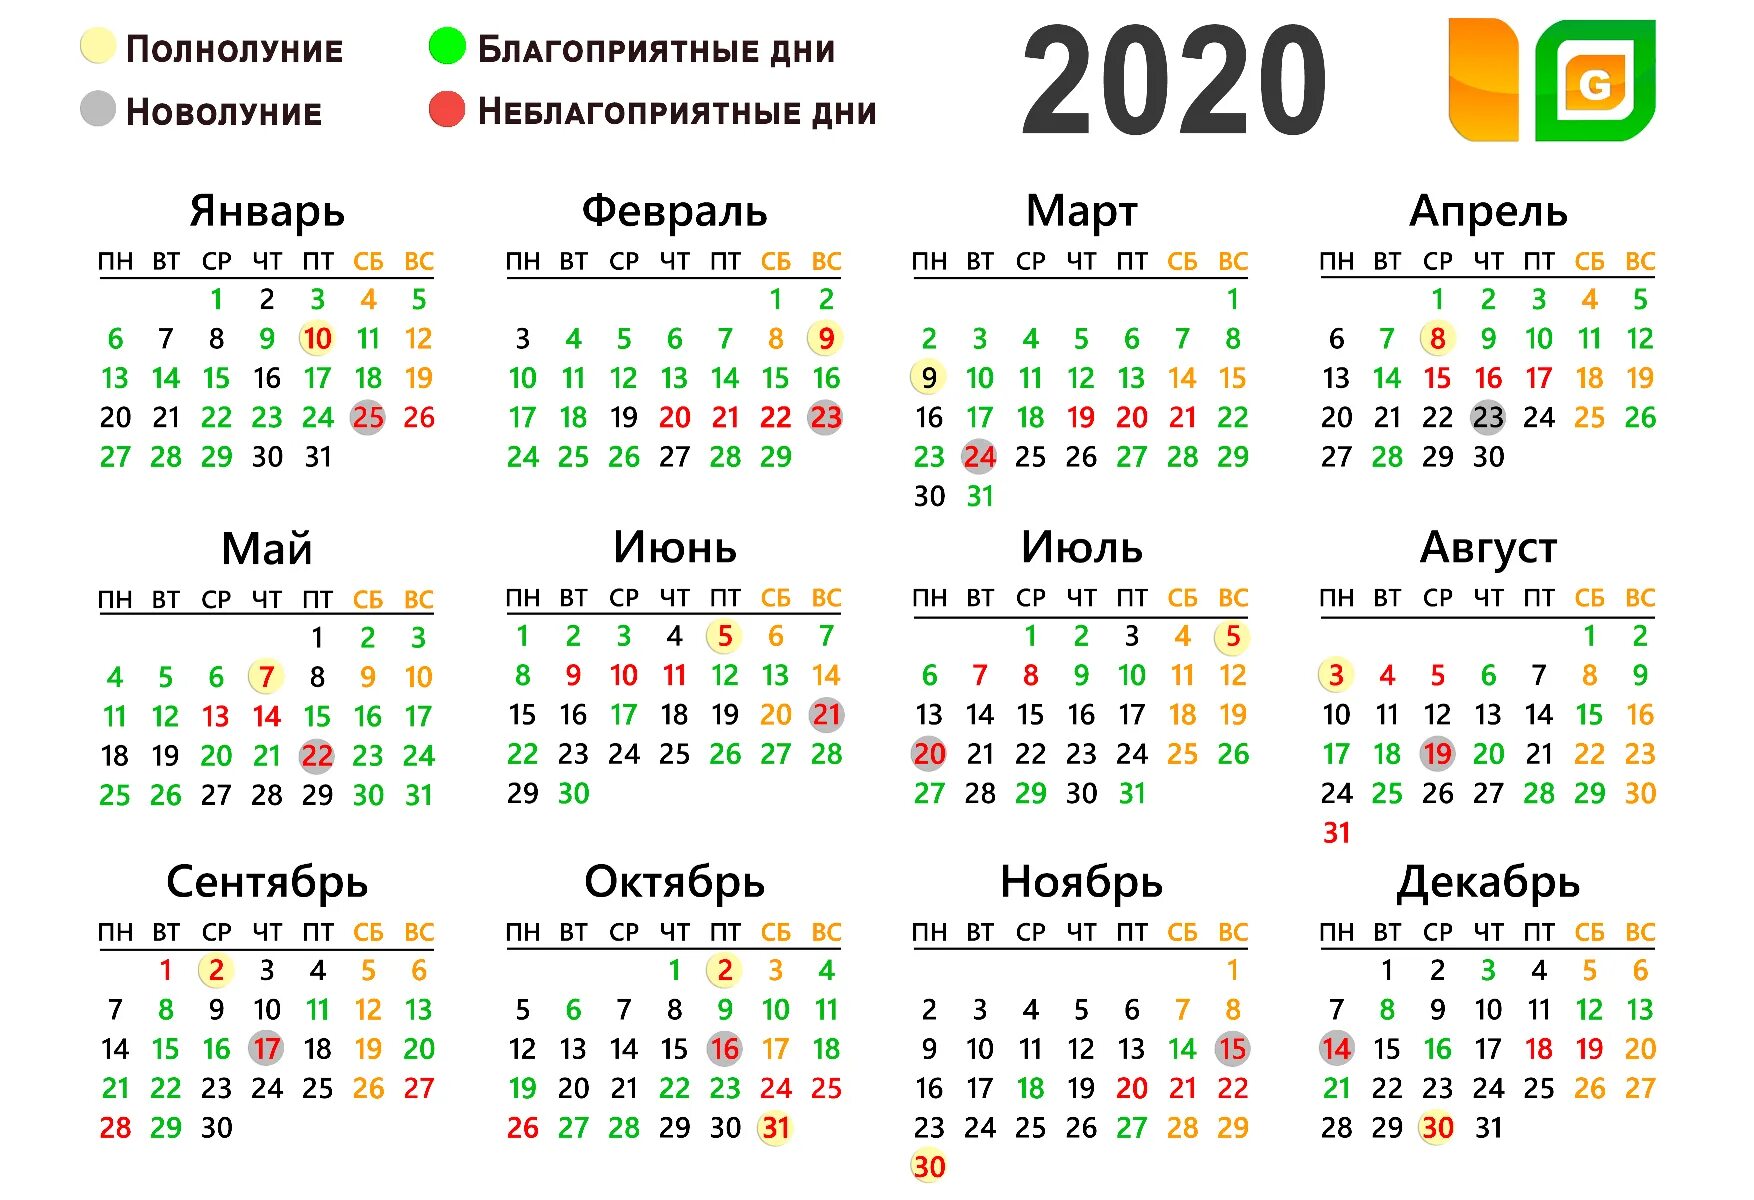 Благоприятные дни 2020 лунный календарь. Календарь благоприятных дней. Лунный календарь. Лунный календарь 2020. Благоприятные дни по лунному календарю.